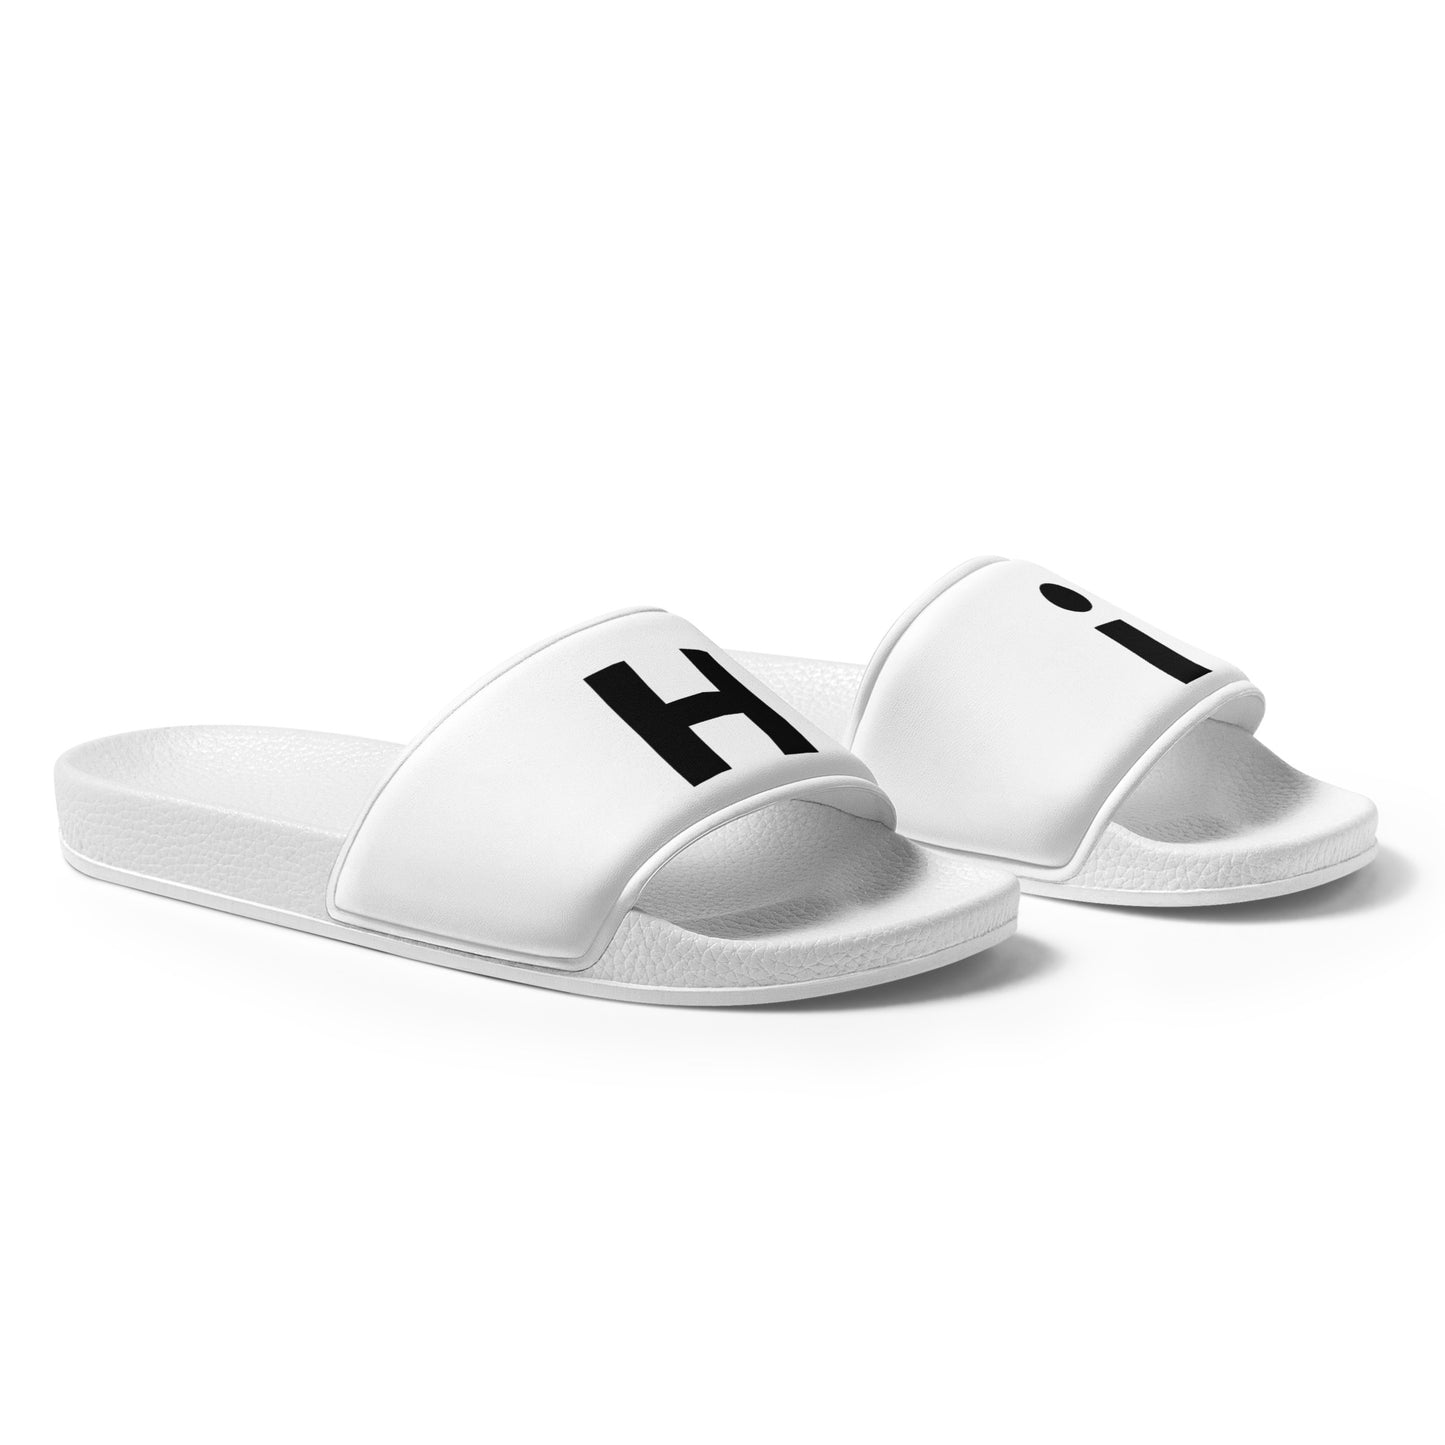 Hi H and i Flip Flop Slide Mens Sandals by Johnny Michael at HiJohnny.com